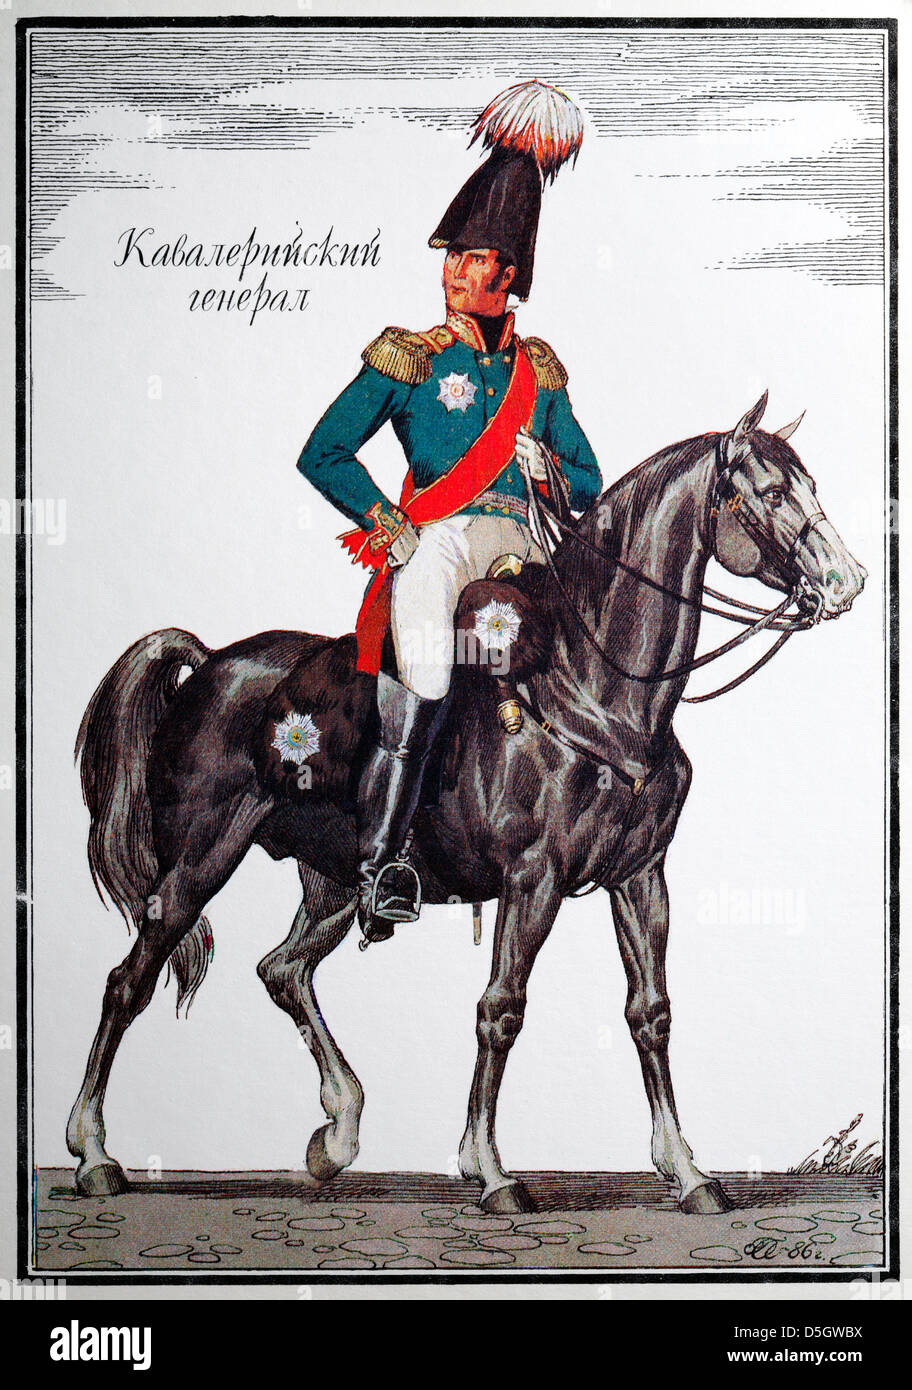 L'uniforme de général de cavalerie de l'armée russe (1812), carte postale, Russie, 1988 Banque D'Images